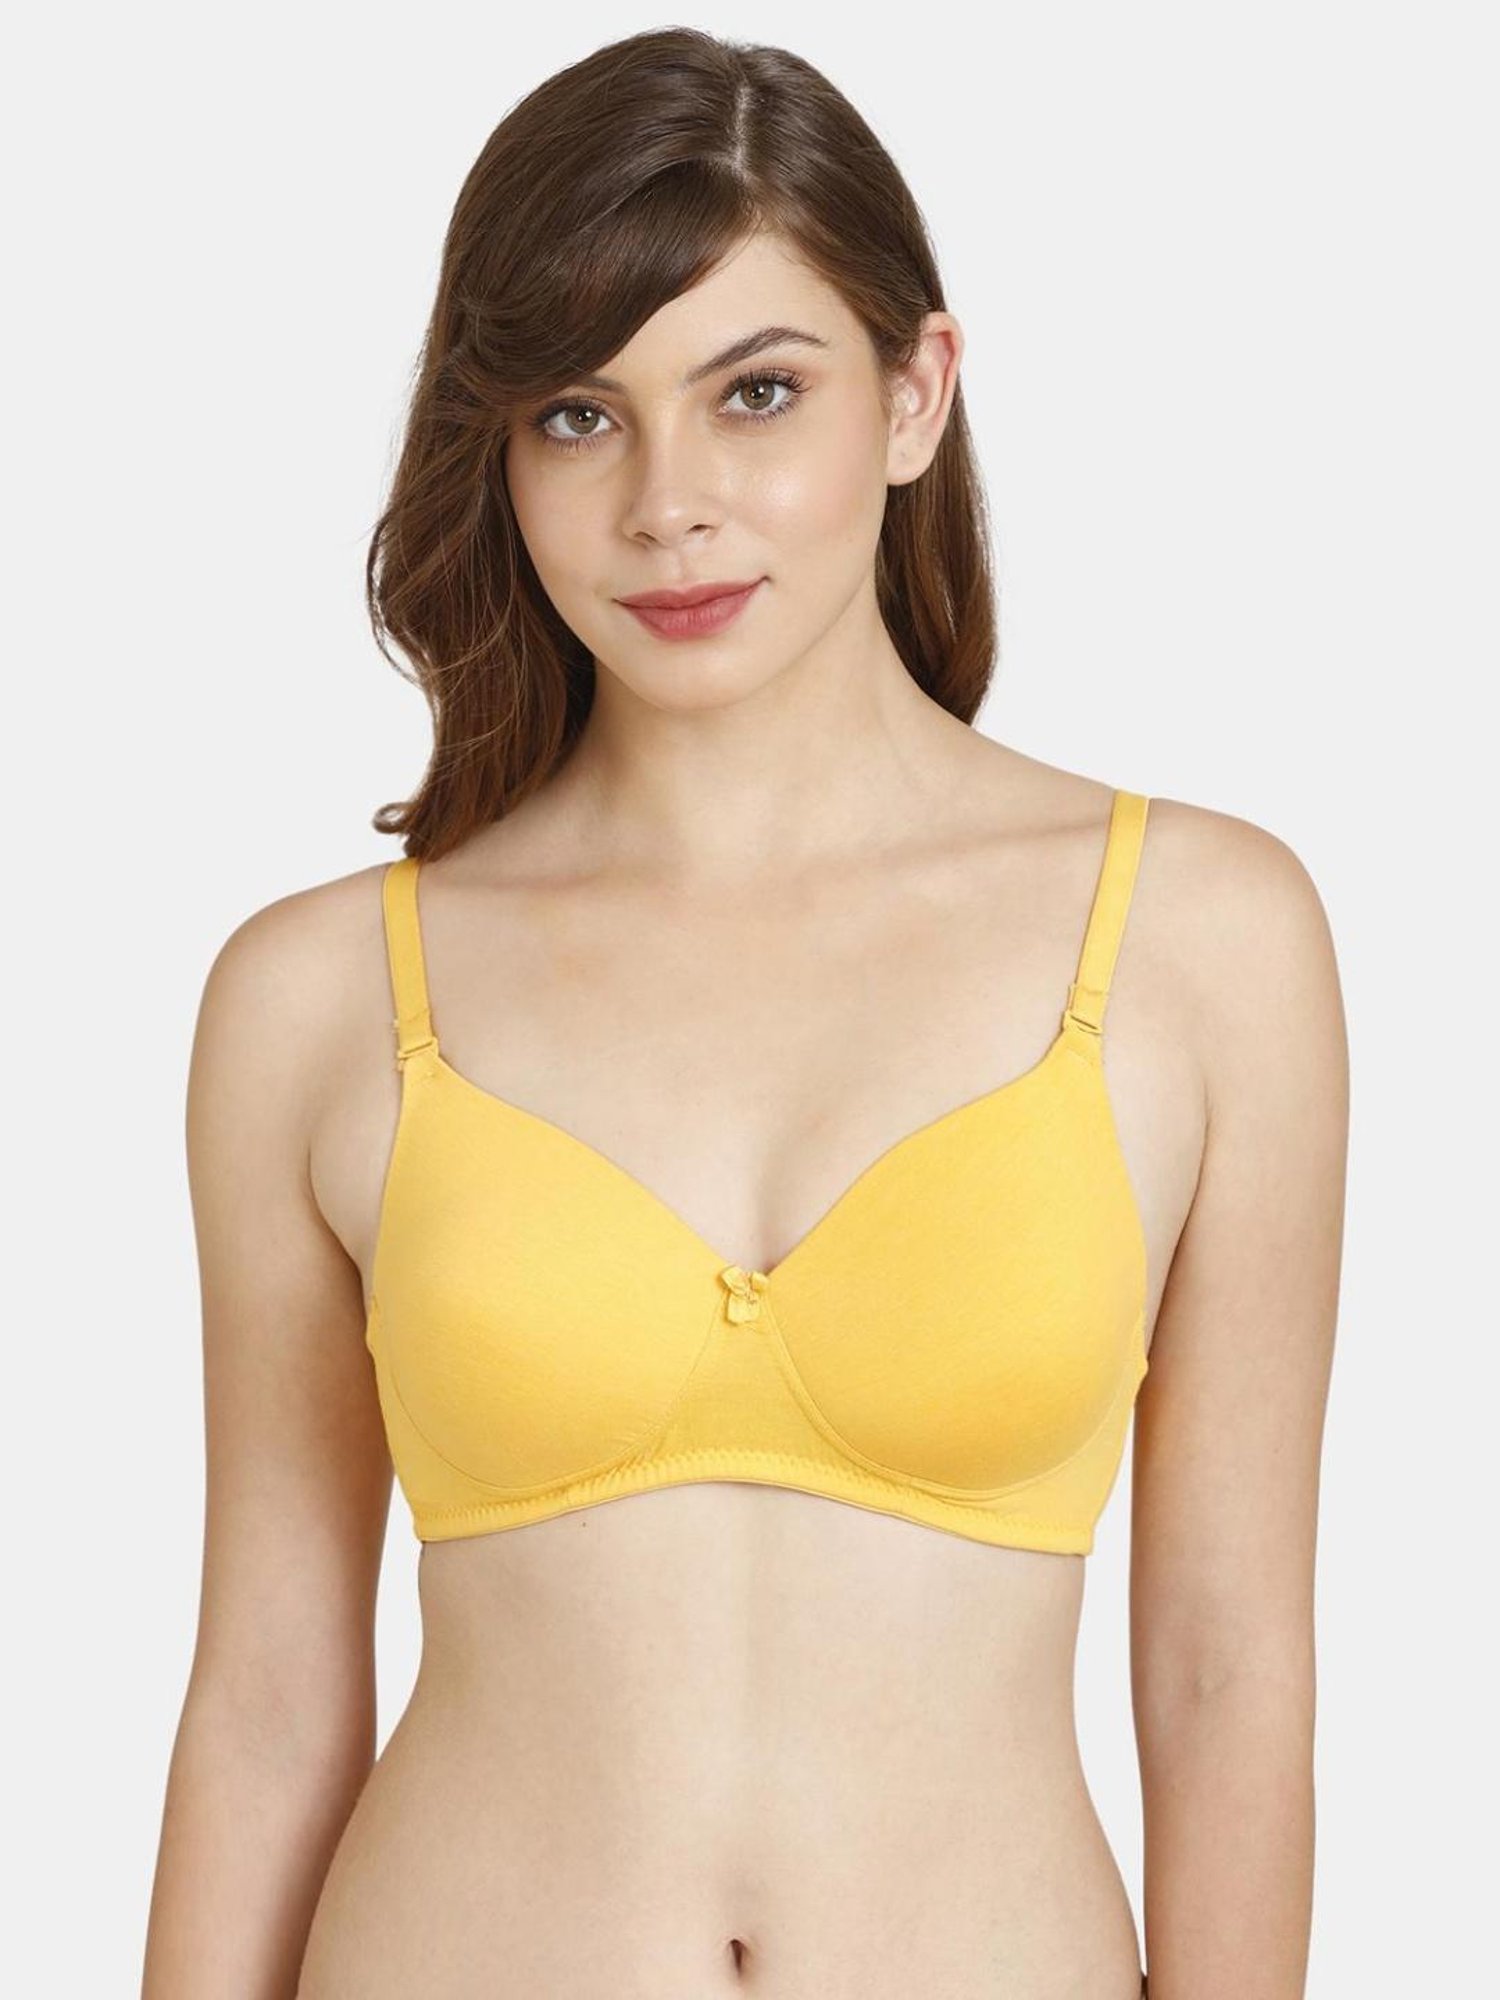 Buy Rosaline by Zivame Yellow Padded Bra for Women Online @ Tata CLiQ